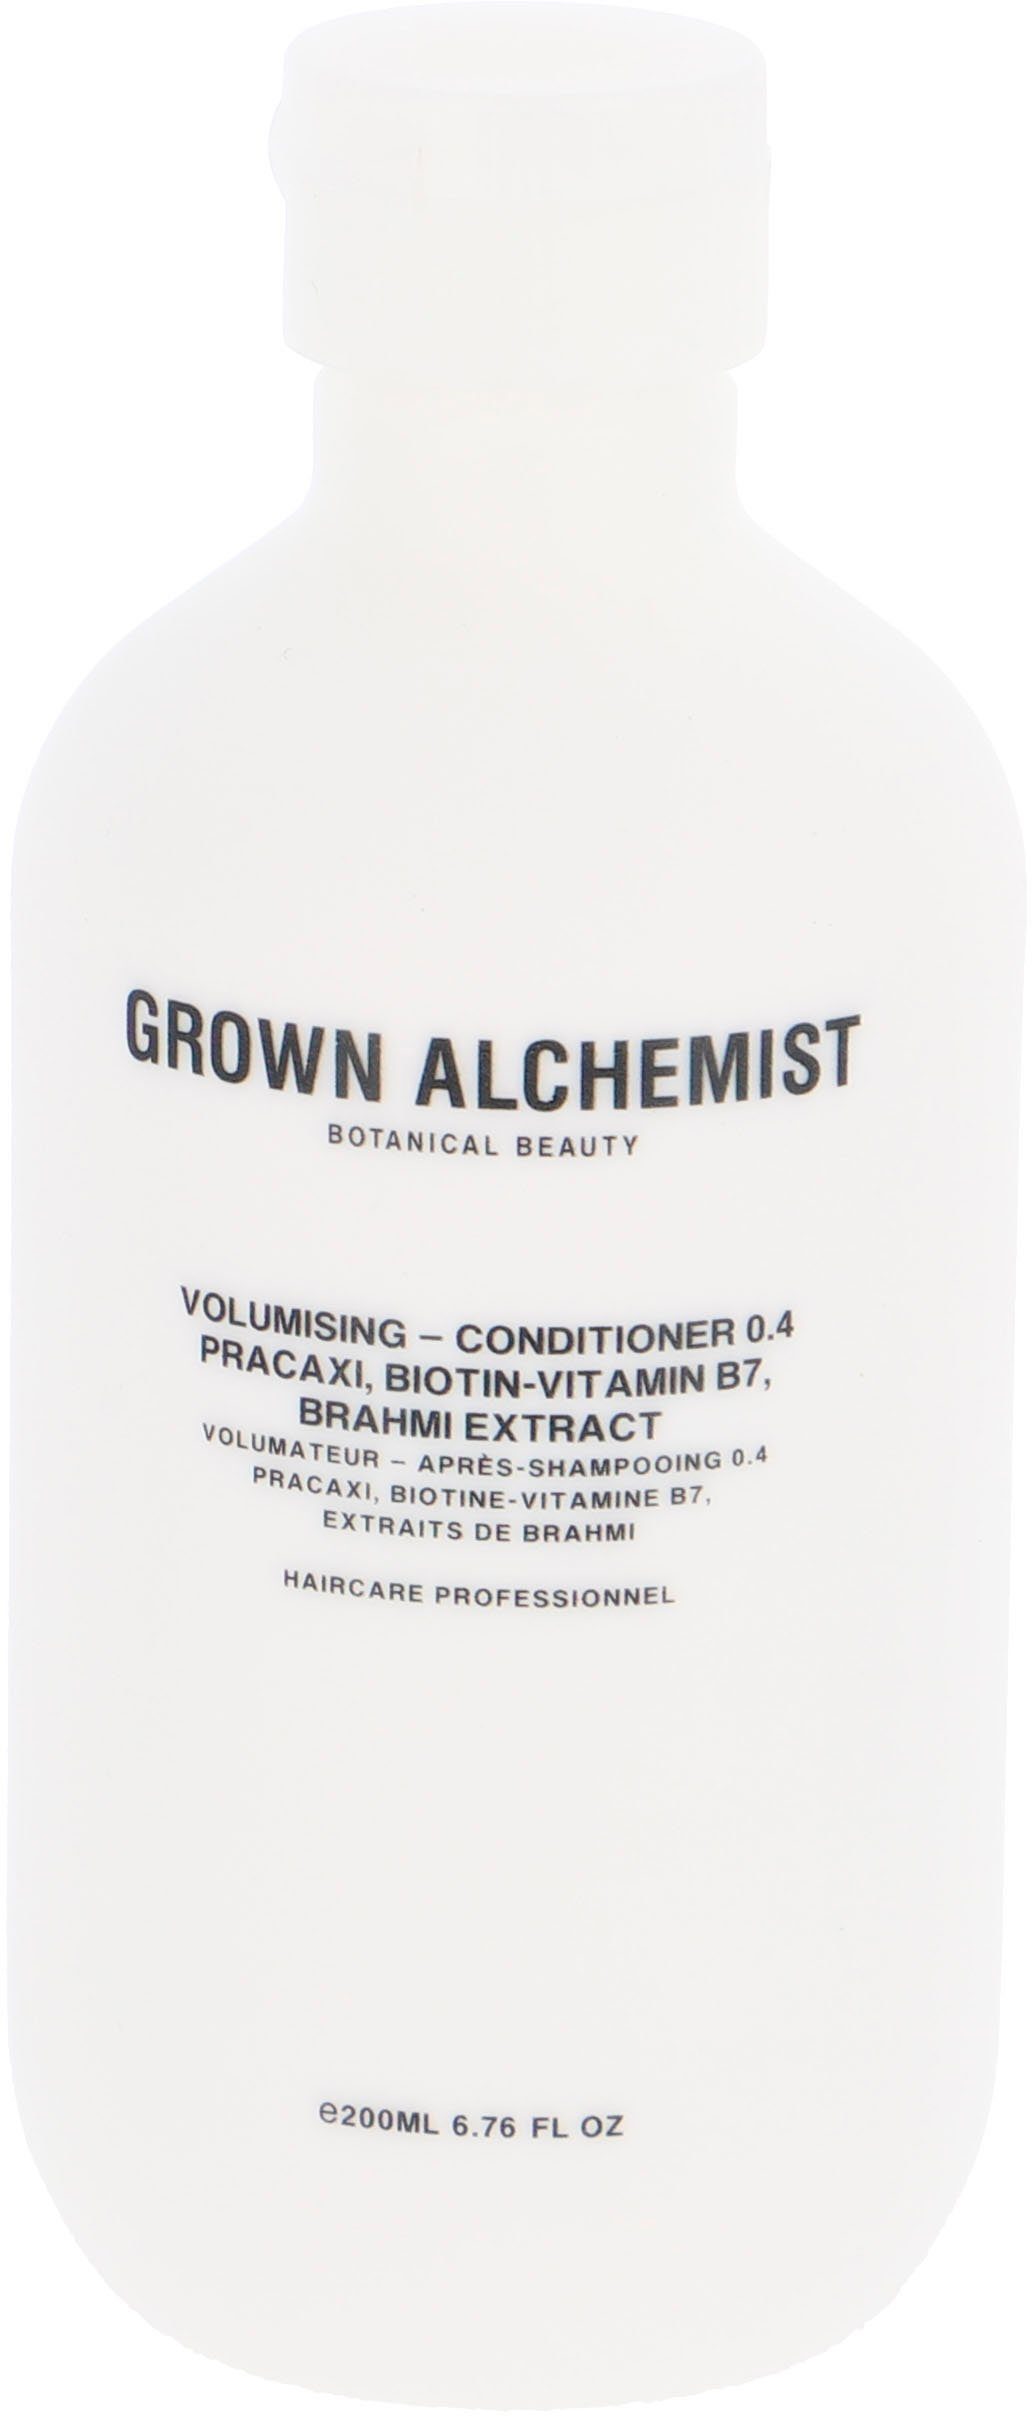 Lieferung am nächsten Tag GROWN ALCHEMIST Haarspülung Volumising - Brahmi Conditioner Pracaxi, Biotin-Vitamin Extract 0.4, B7